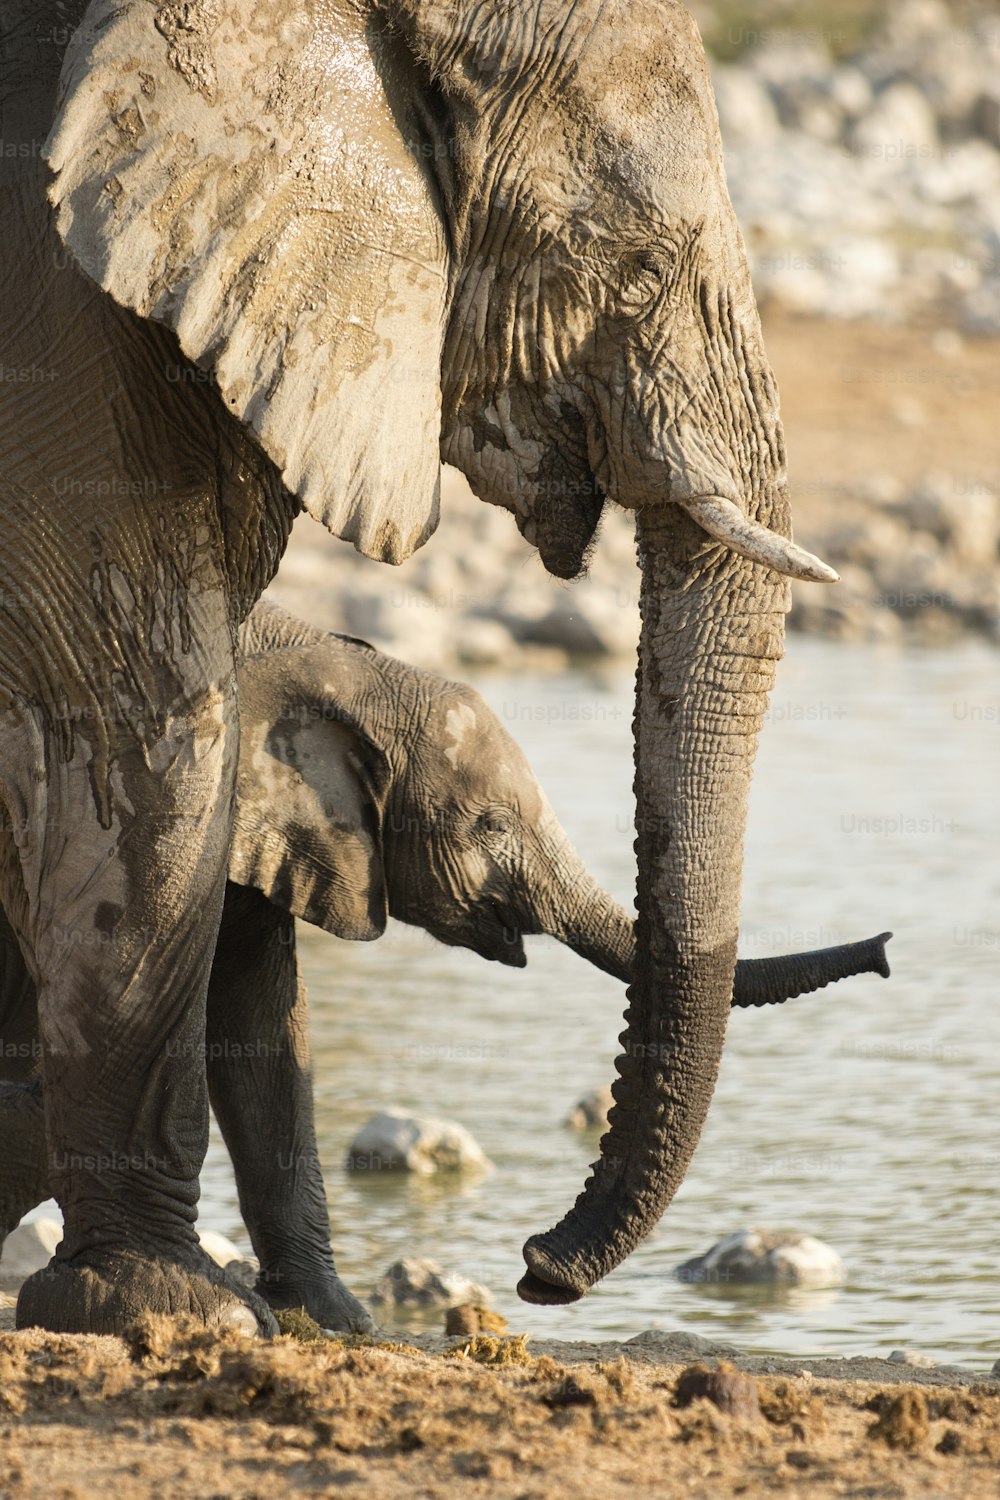 Elefante alla pozza d'acqua di Okaukuejo